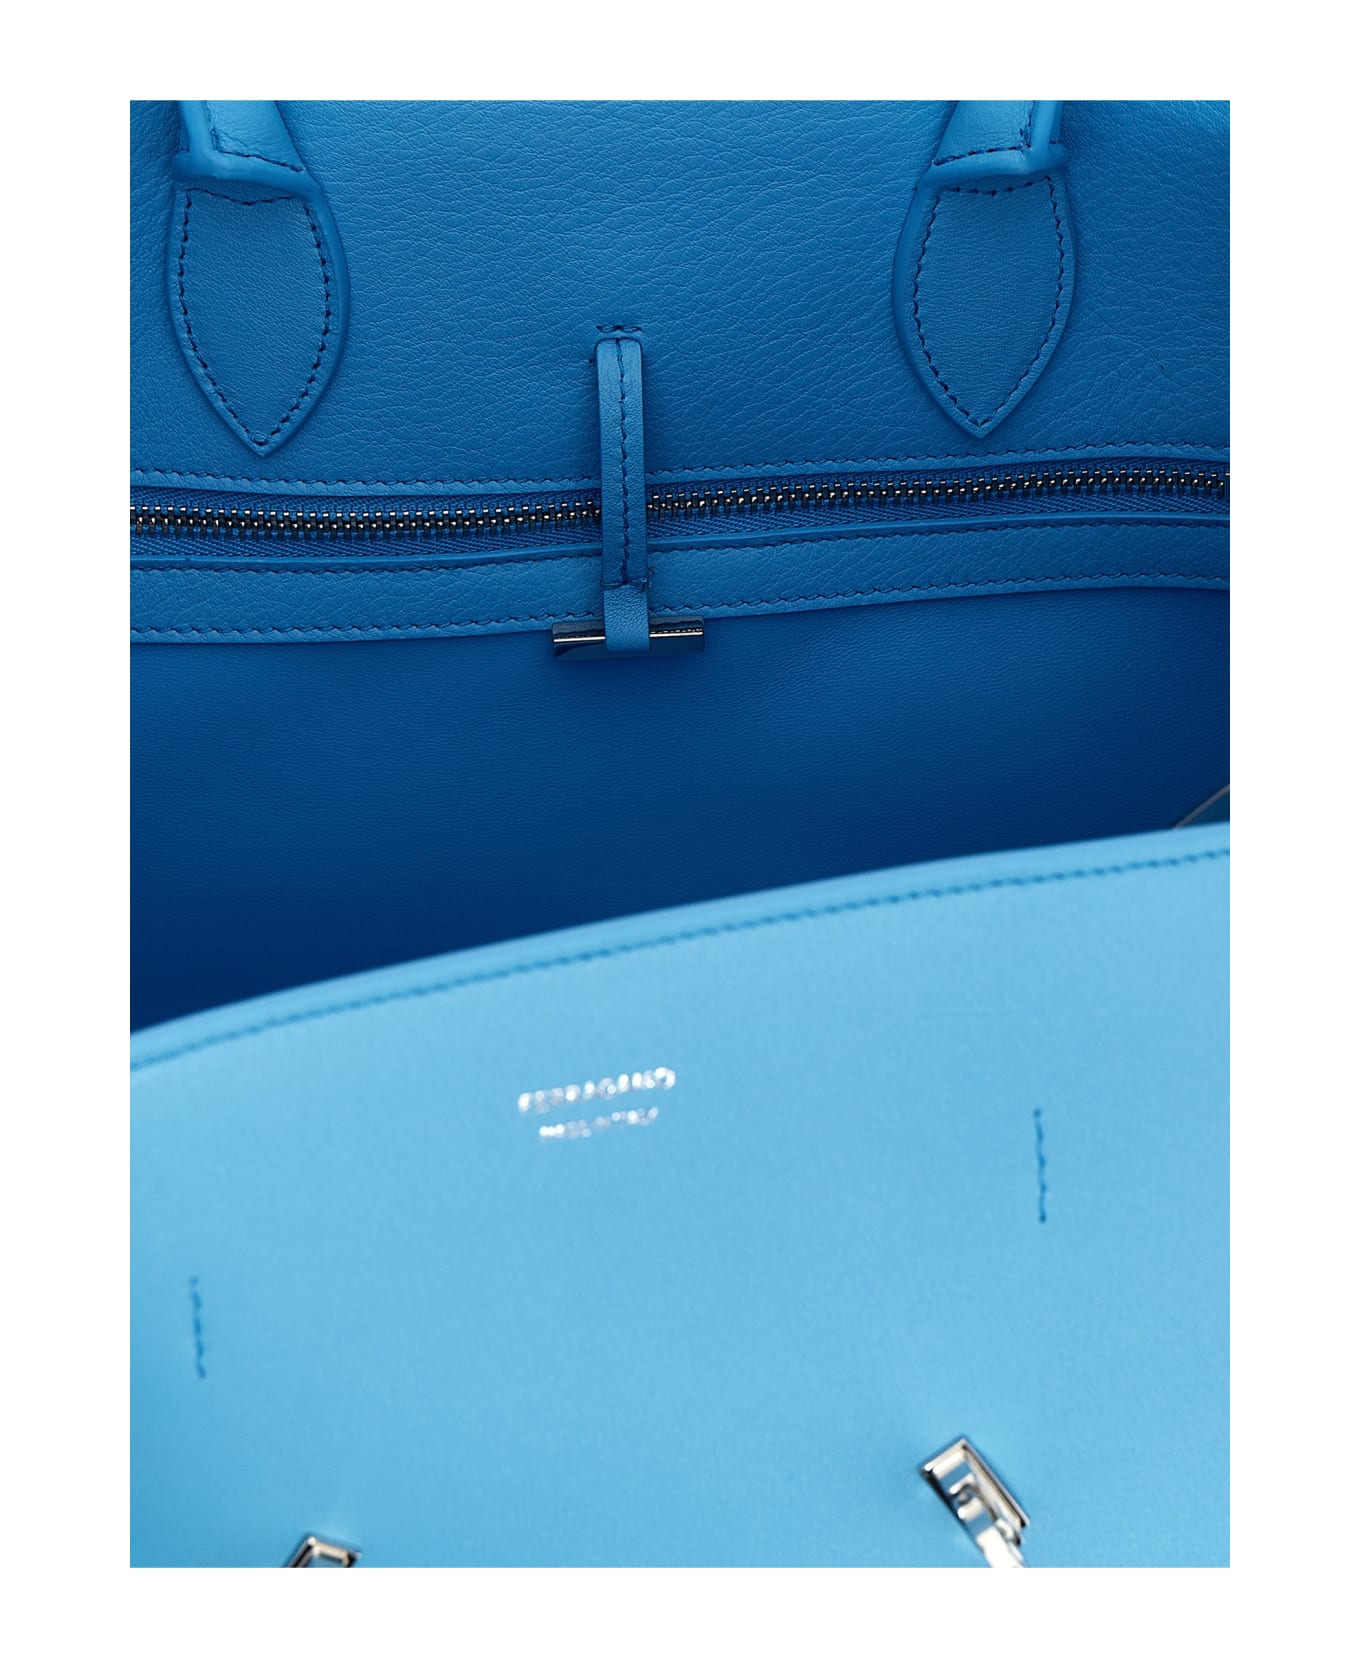 Ferragamo 'hug S' Handbag - Light Blue